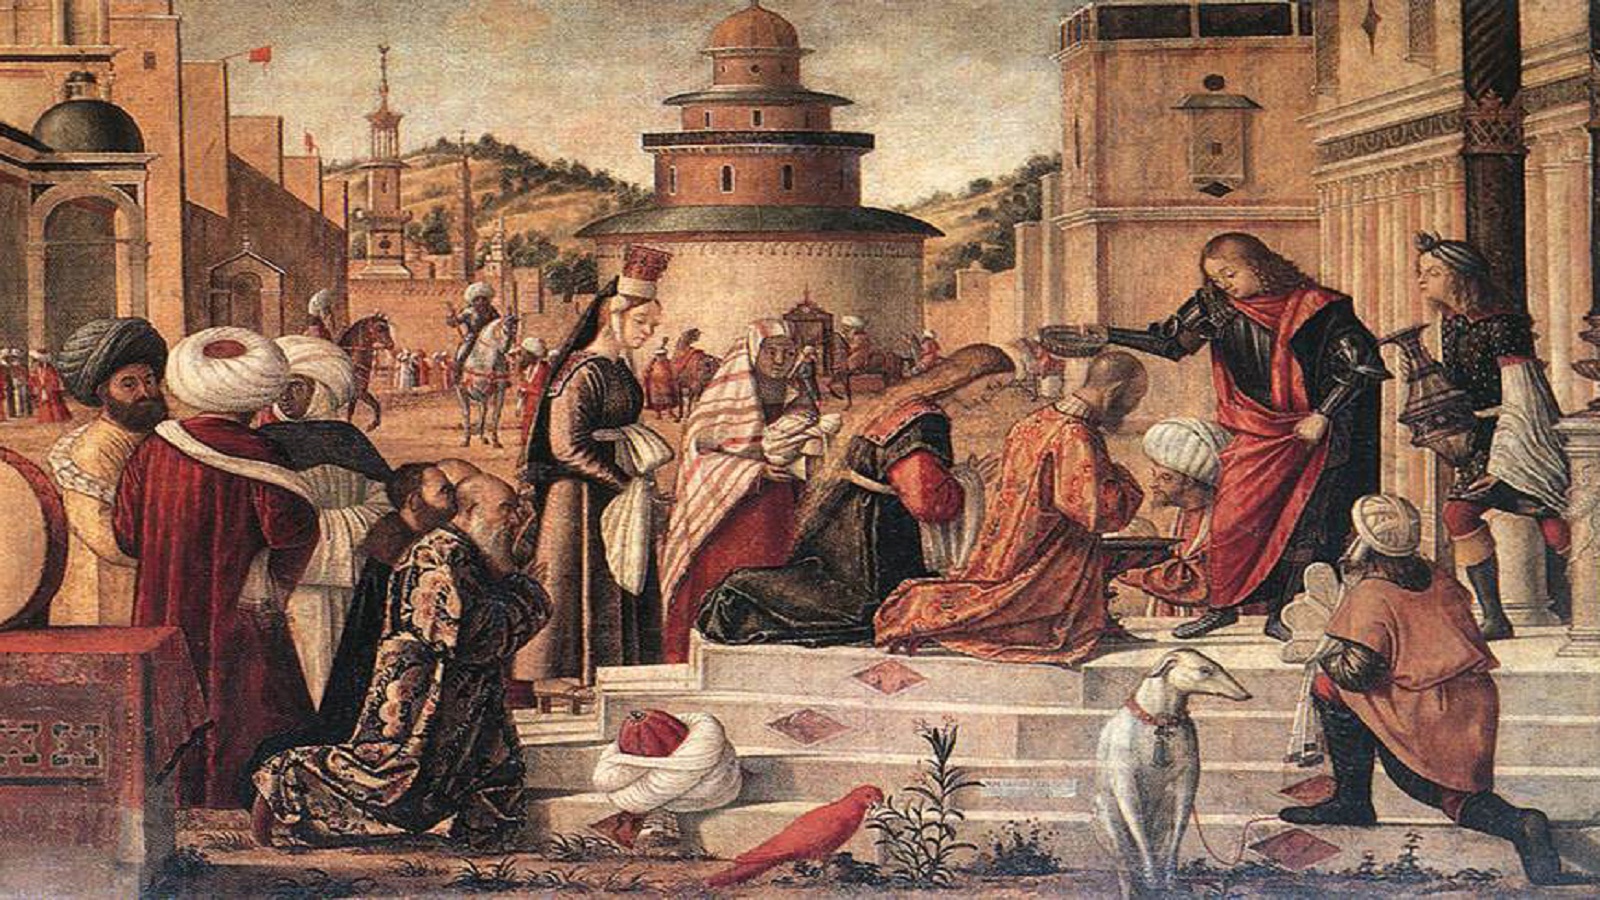  تفصيل من لوحة معمودية ملك المدينة الليبية على يد القديس جاورجيوس